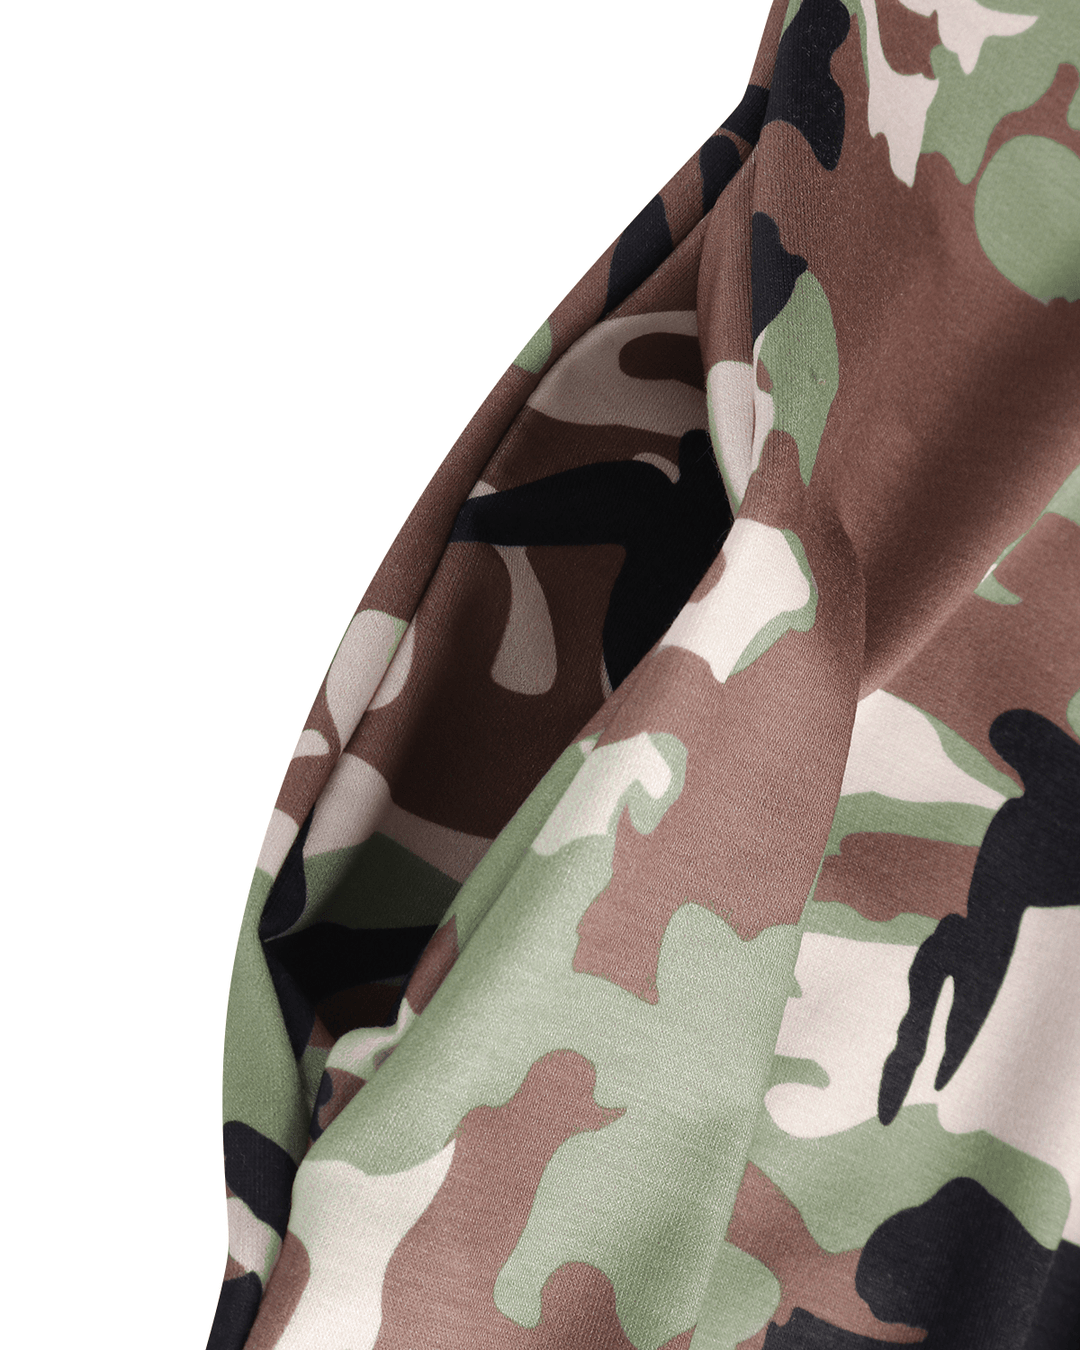 Long Sleeve Hooded Loose Pocket Pullover Camouflage Print Hoodie Dress - MRSLM